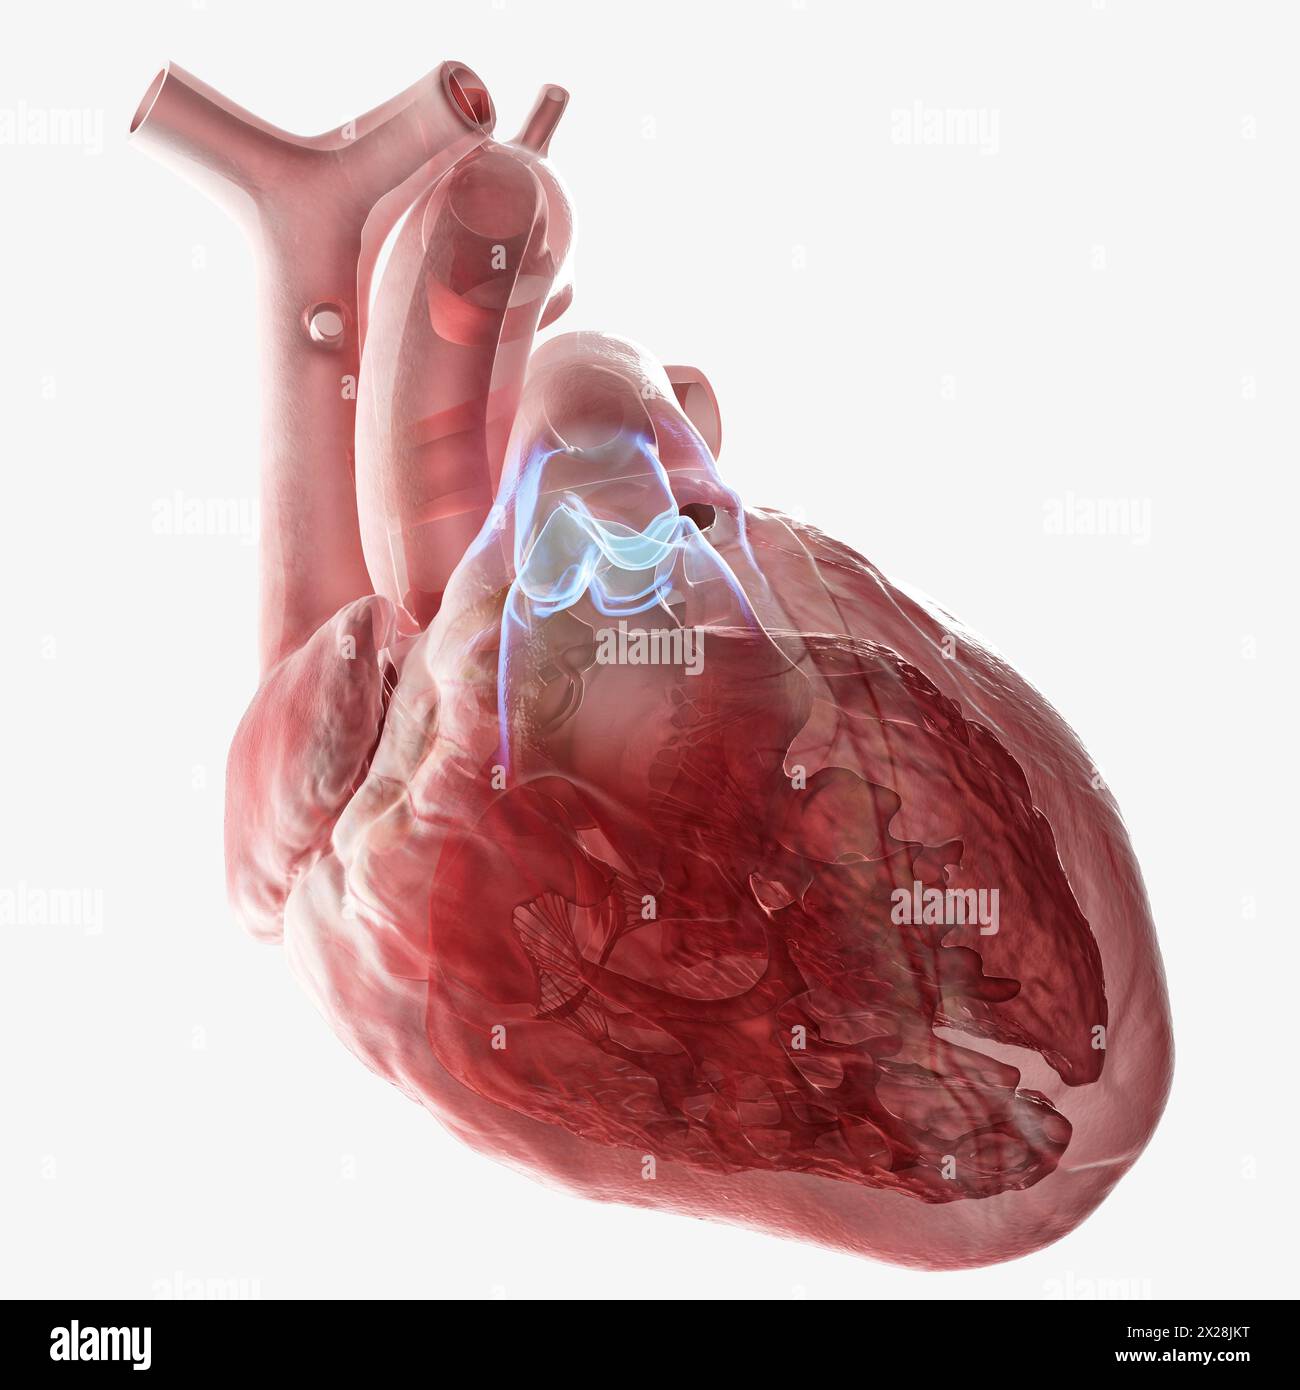 Human heart pulmonary valve, illustration Stock Photo